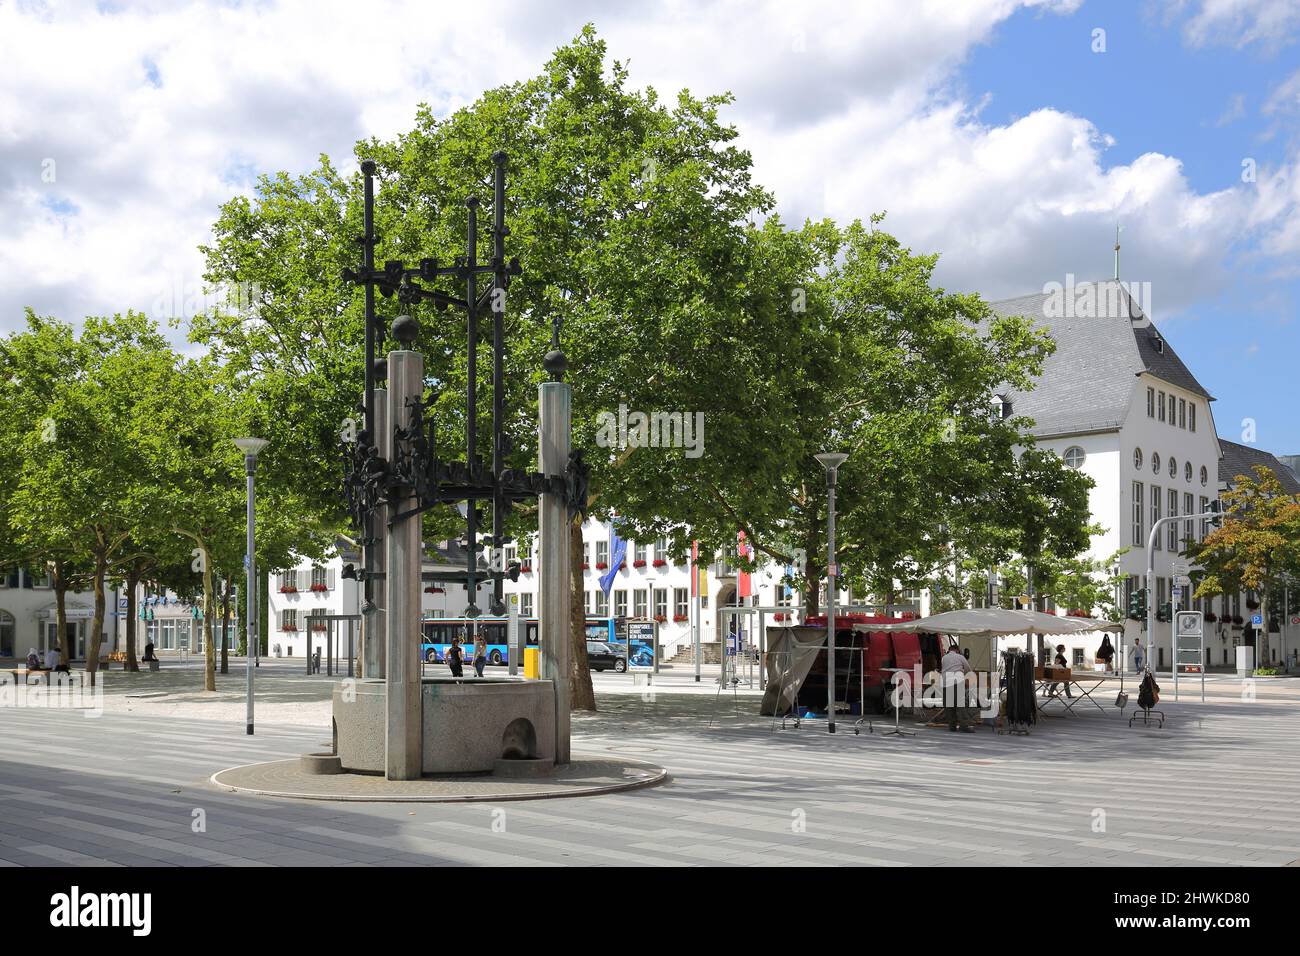 Marktplatz mit Handelsbrunnen, in Rüsselsheim am Main, Hessen, Deutschland Stockfoto